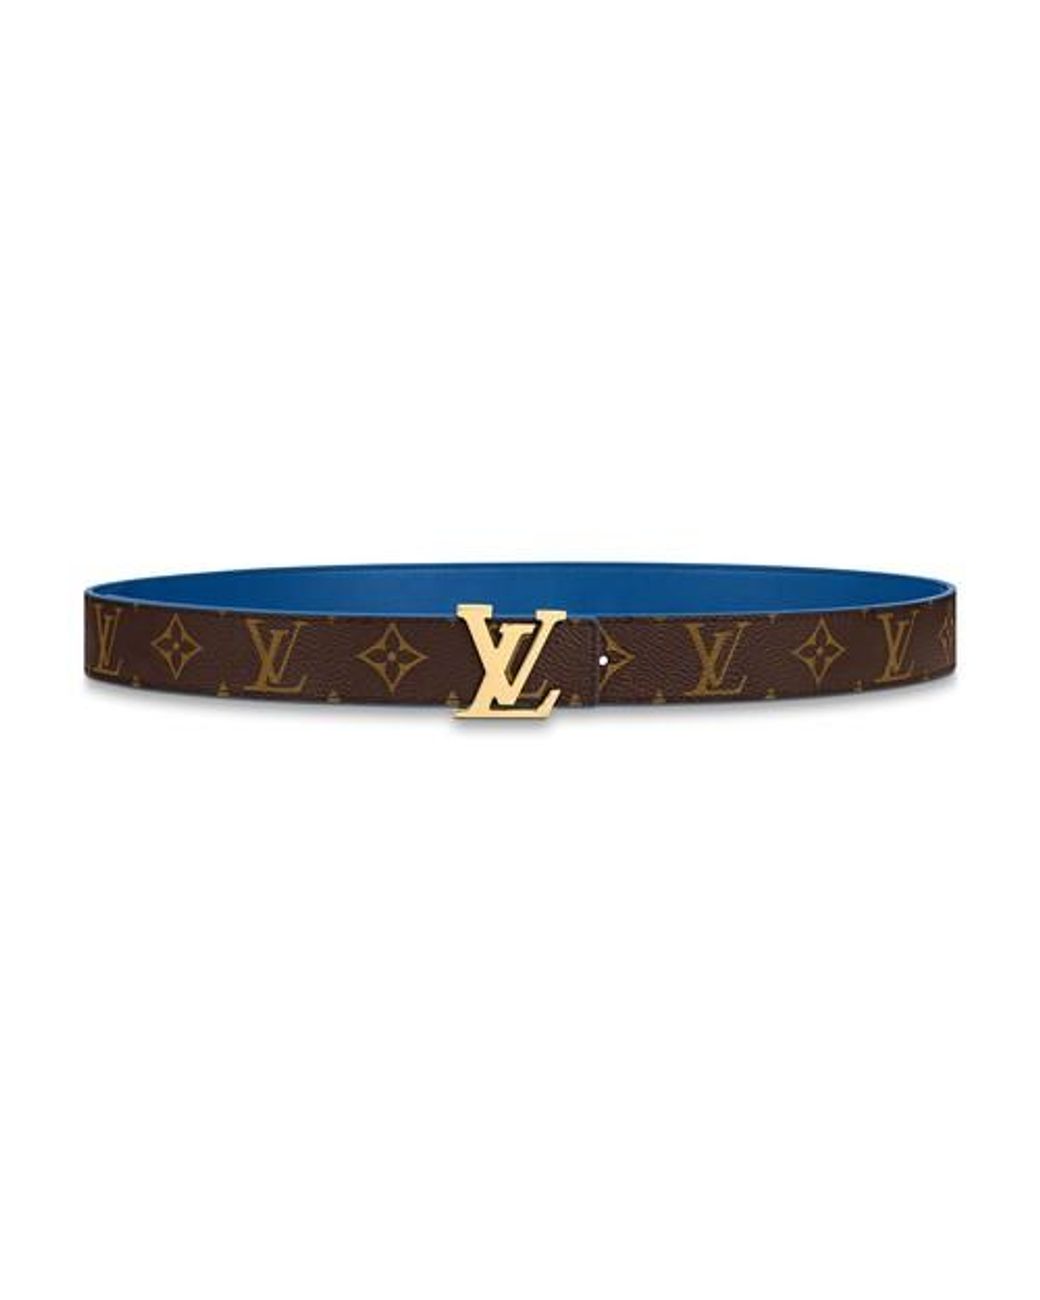 Louis Vuitton LV Initiales 30mm Reversible Belt Rose Poudre + Calf Leather. Size 90 cm